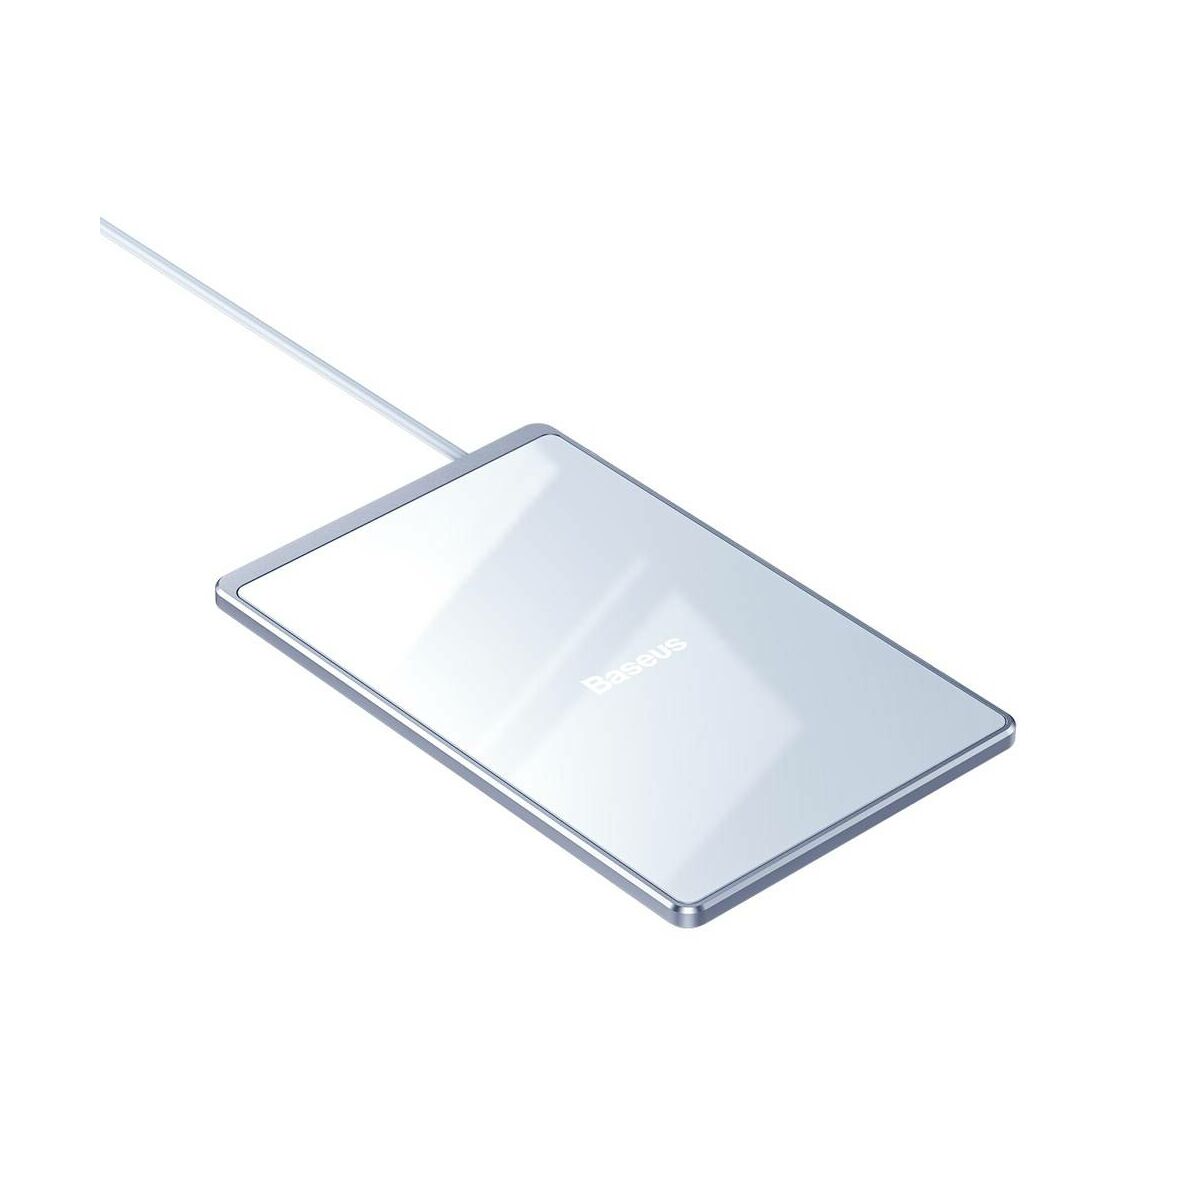 Kép 9/13 - Baseus vezeték nélküli töltő, Ultra-thin Card 15W (beépített 1m USB kábellel), ezüst/fehér (WX01B-S2)